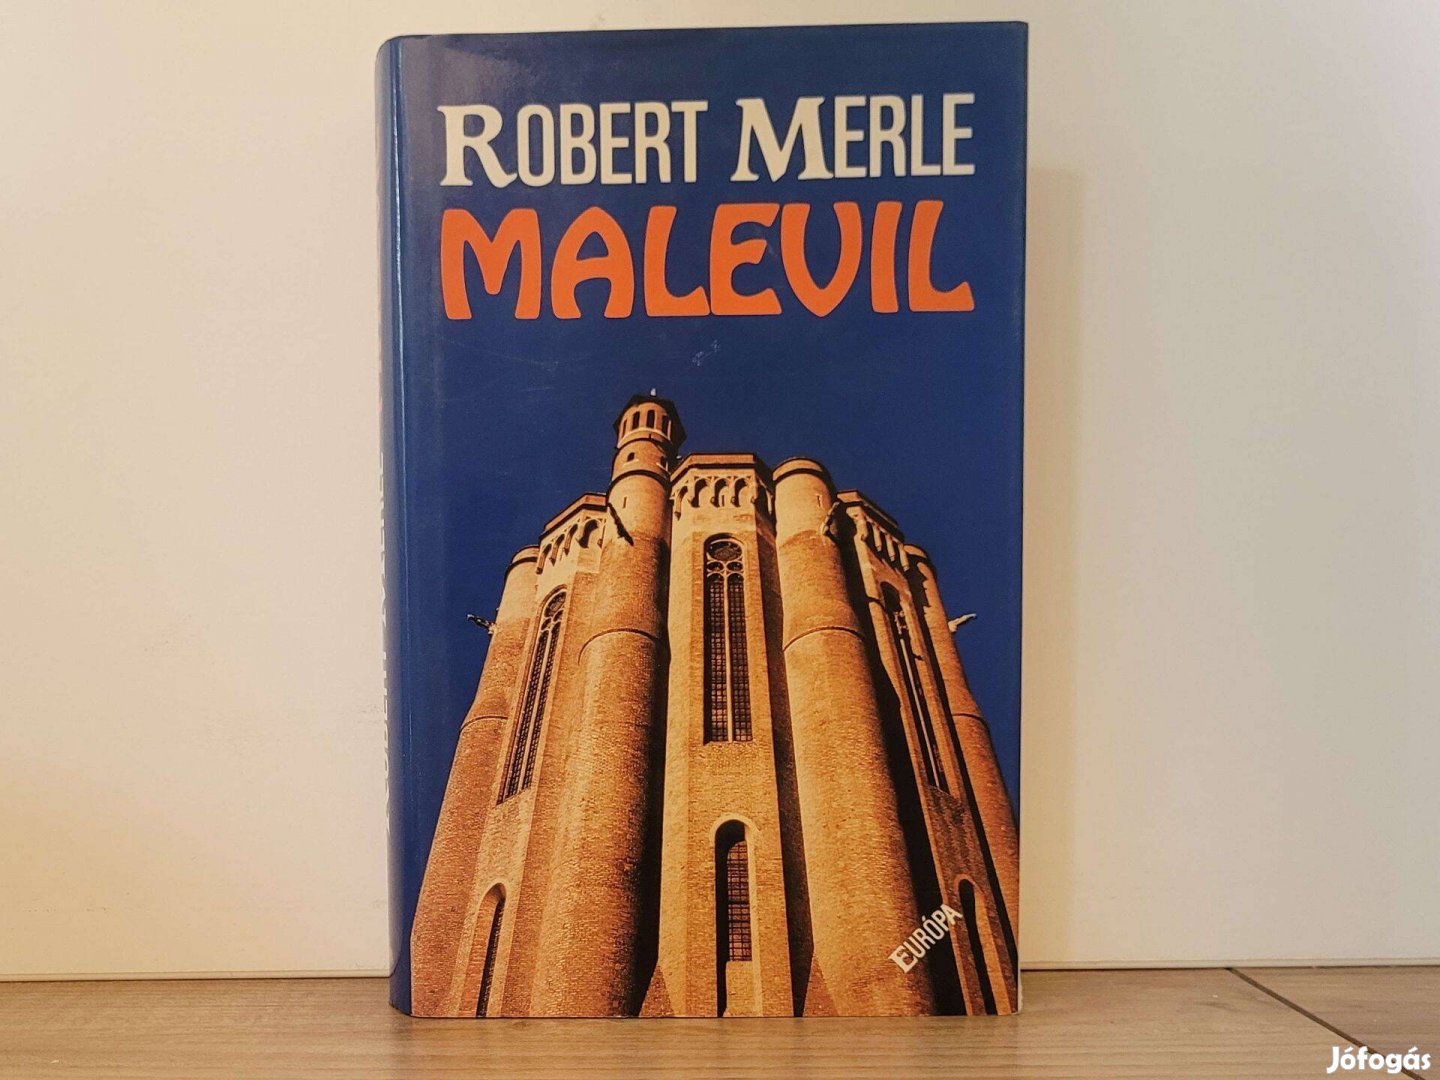 Malevil - Robert Merle könyv eladó